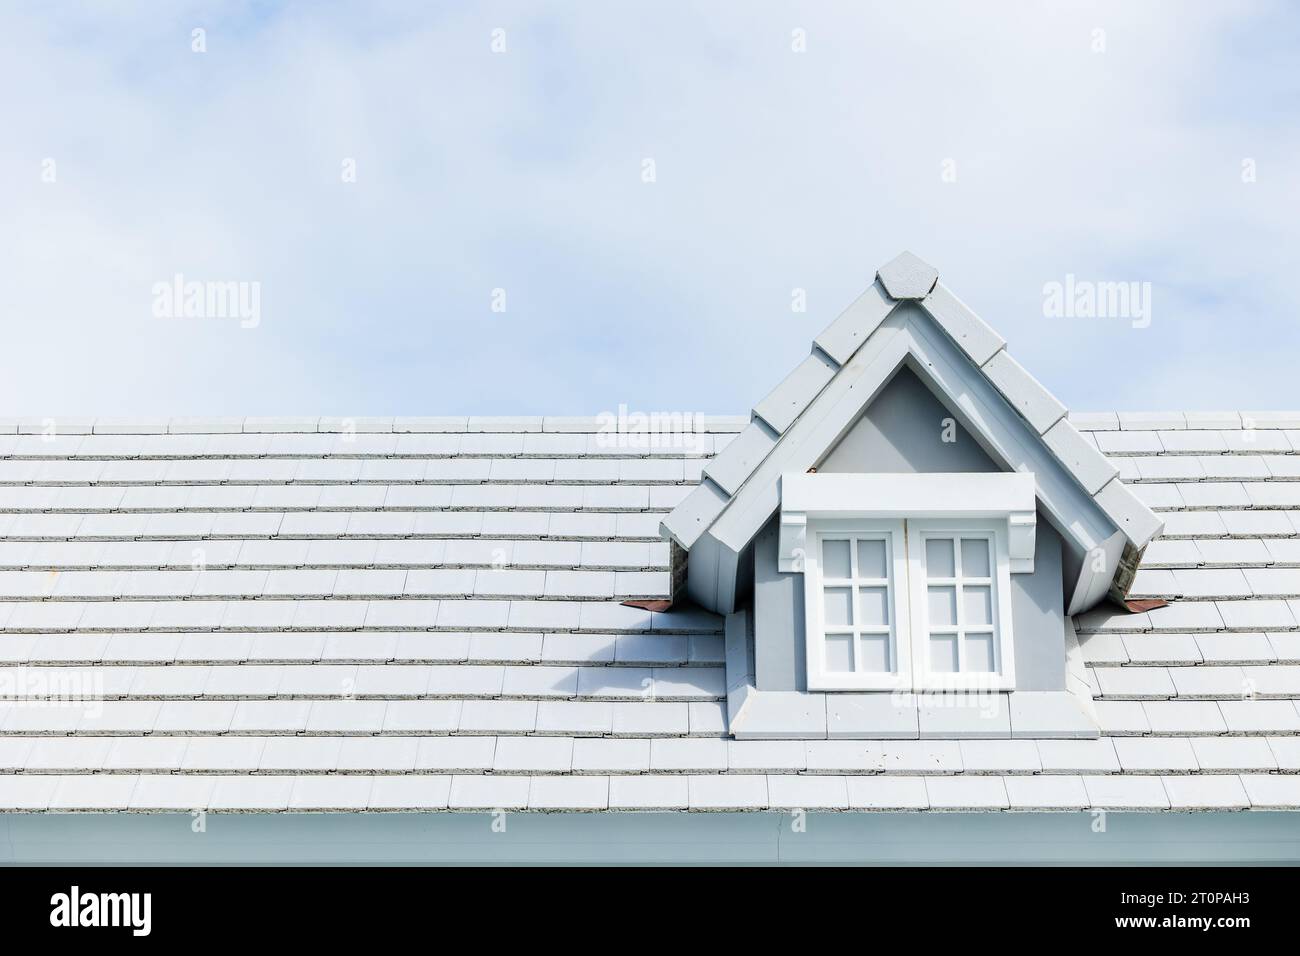 Garret-Zimmer am Schindeldach modernes Asphaltmaterial Dachziegel auf dem Dach des Hauses auf dem Sommer klaren blauen sonnigen Himmel Hintergrund Stockfoto